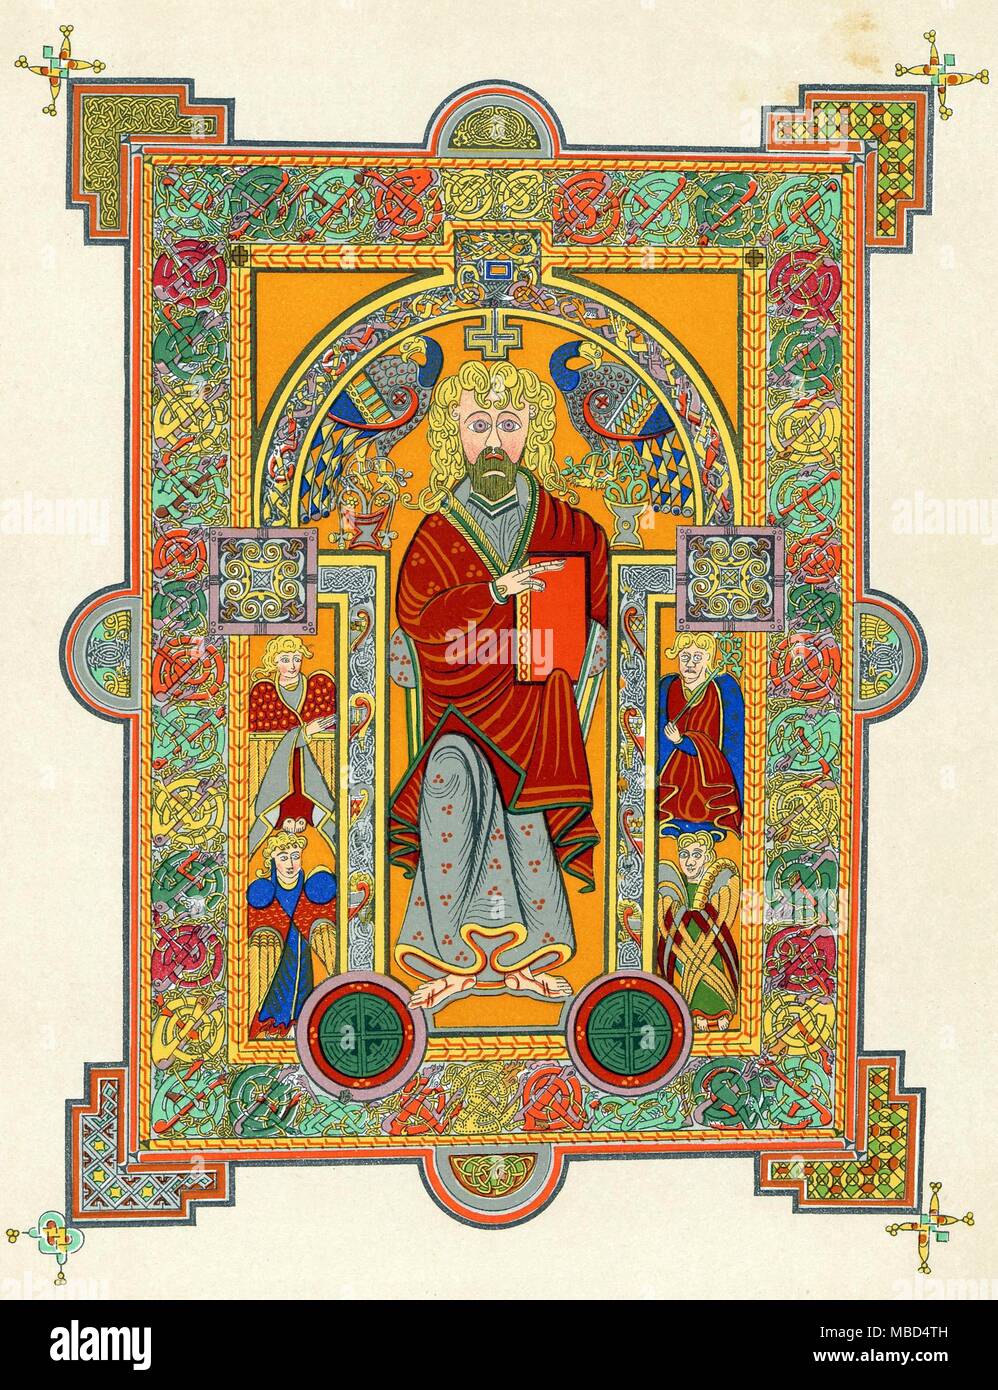 SAINTS-EVANGELISTEN MATTHÄUS 19. Jahrhundert Lithographie basierend auf dem Buch von Kells (ca. 650-690 AD). Stockfoto